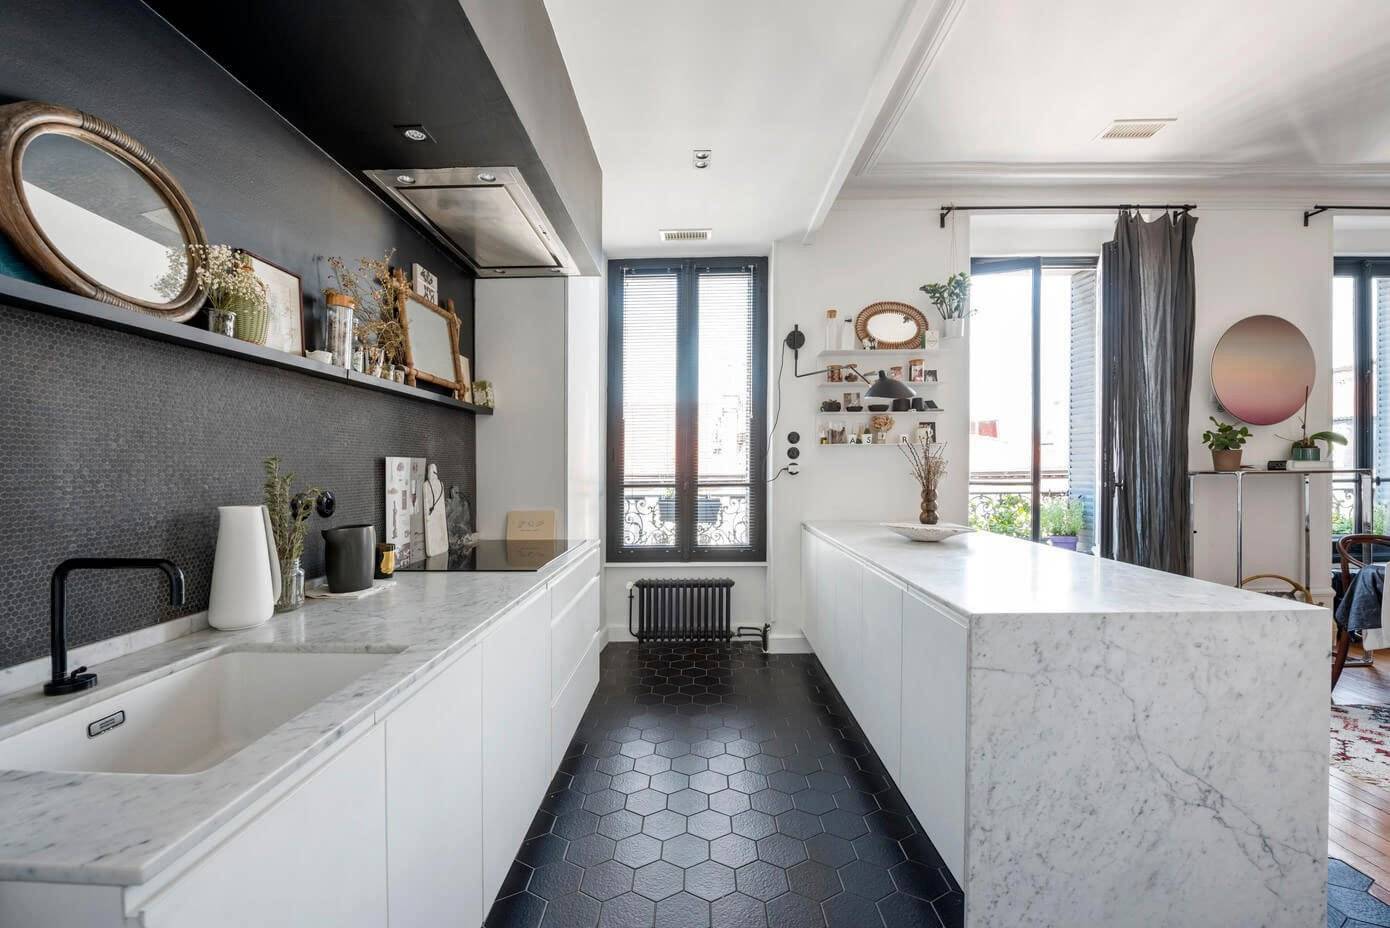 Кухня без верхних навесных шкафов (100 фото): дизайн кухонных гарнитуров